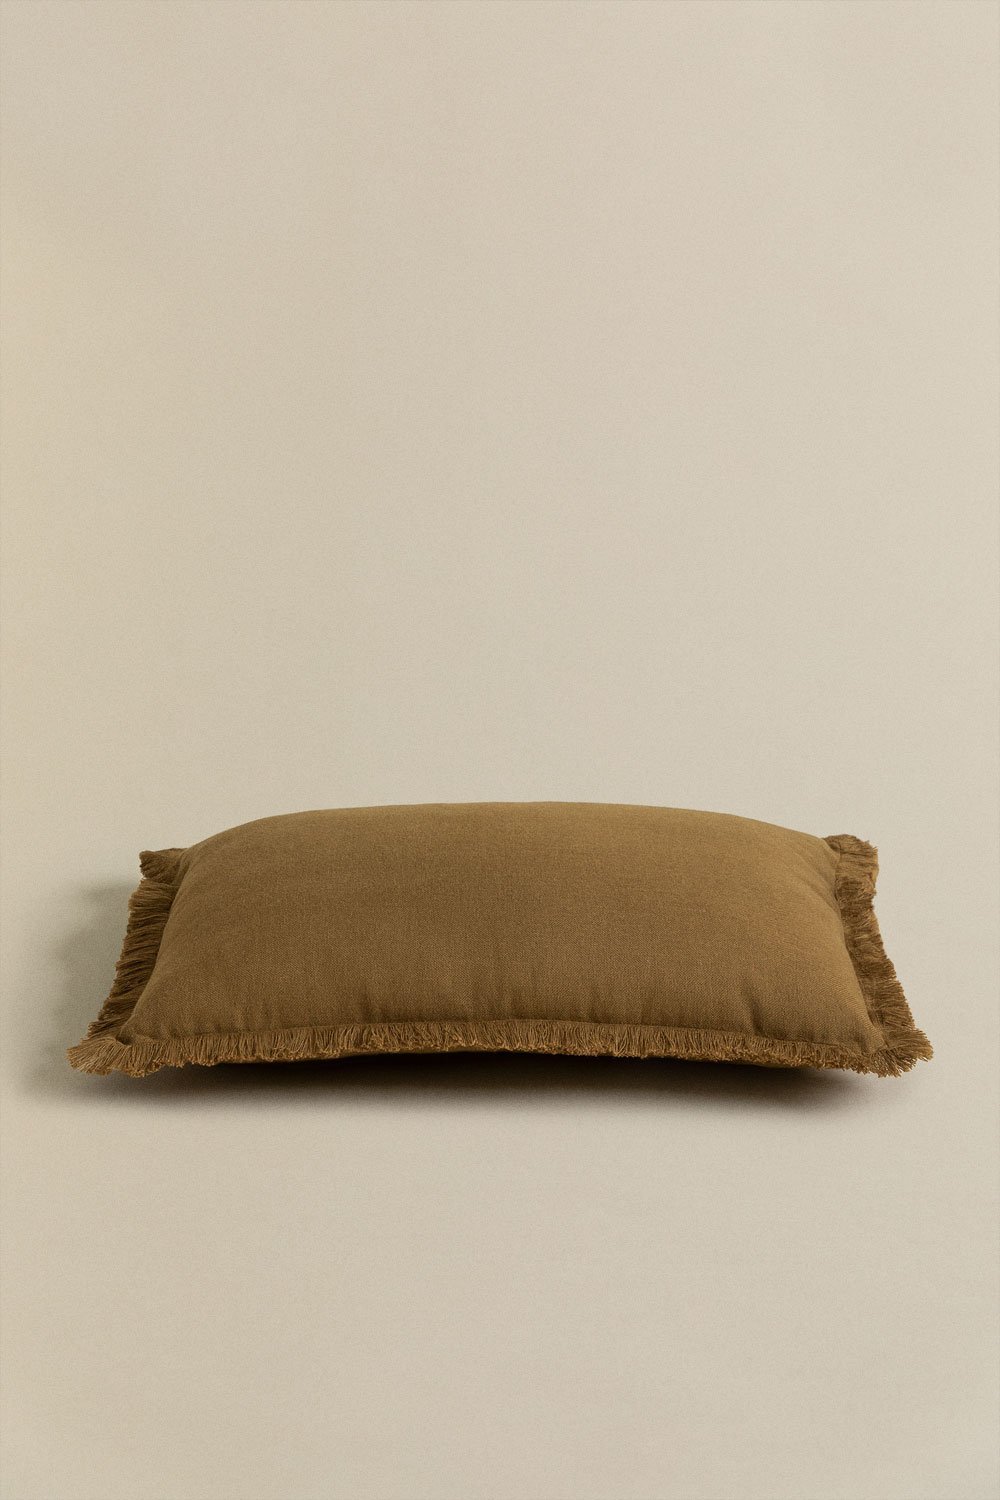 Coussin rectangulaire en coton (30x50 cm) Soncey, image de la galerie 2